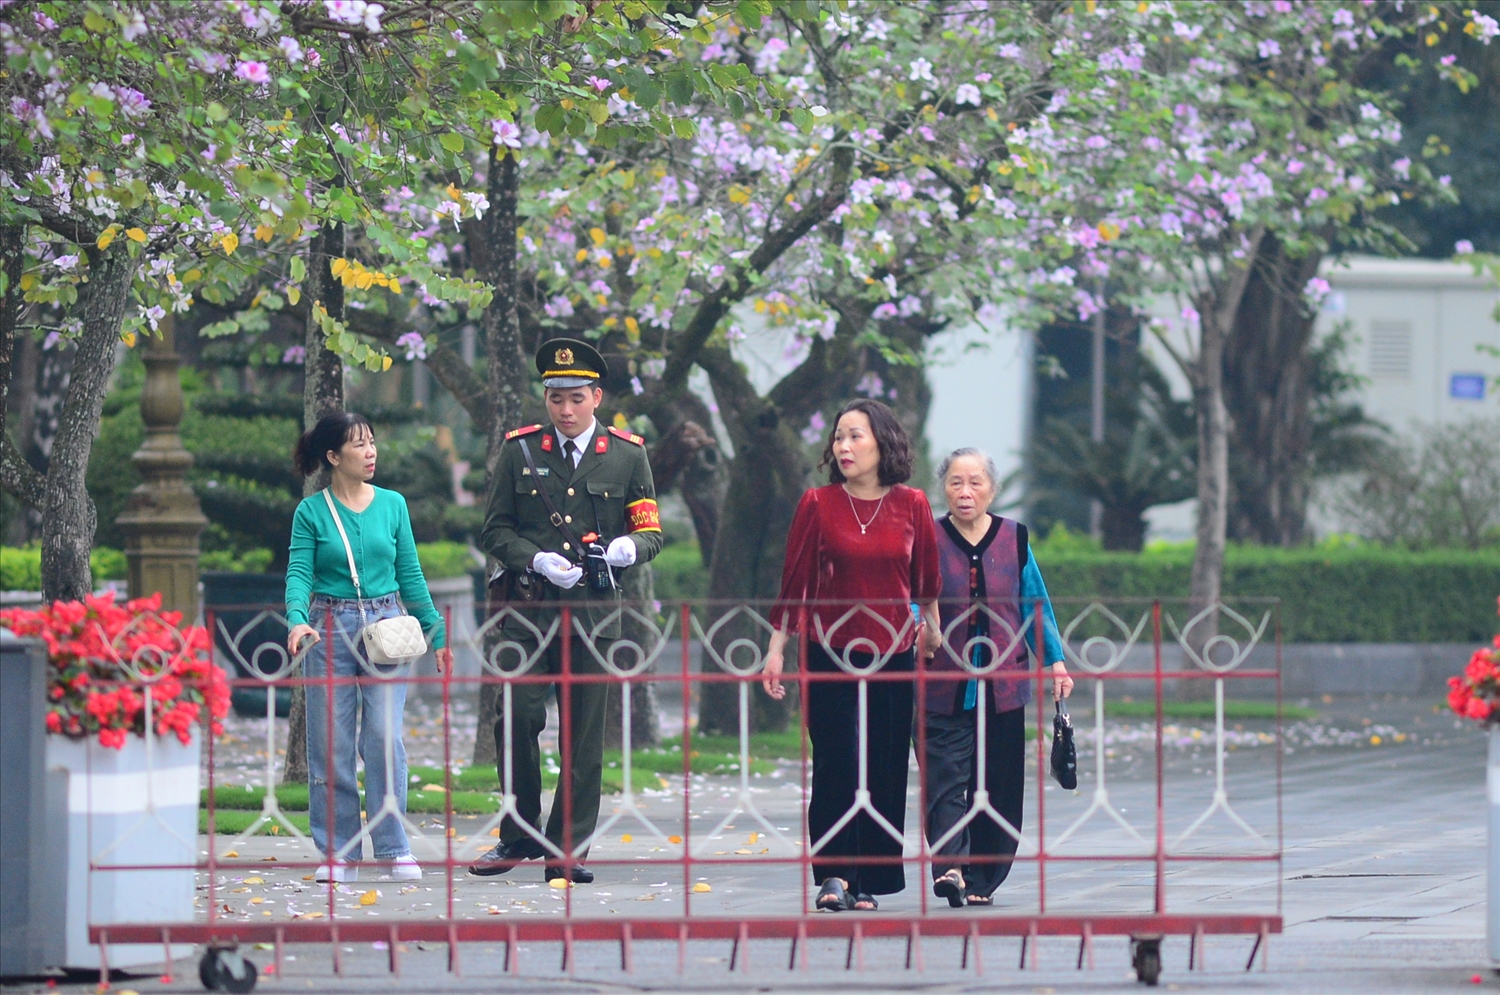 Cuối tháng 2, thời tiết Thủ đô Hà Nội se lạnh thi thoảng có chút nắng nhẹ cũng là thời điểm hoa ban nở rộ trên những cung đường.